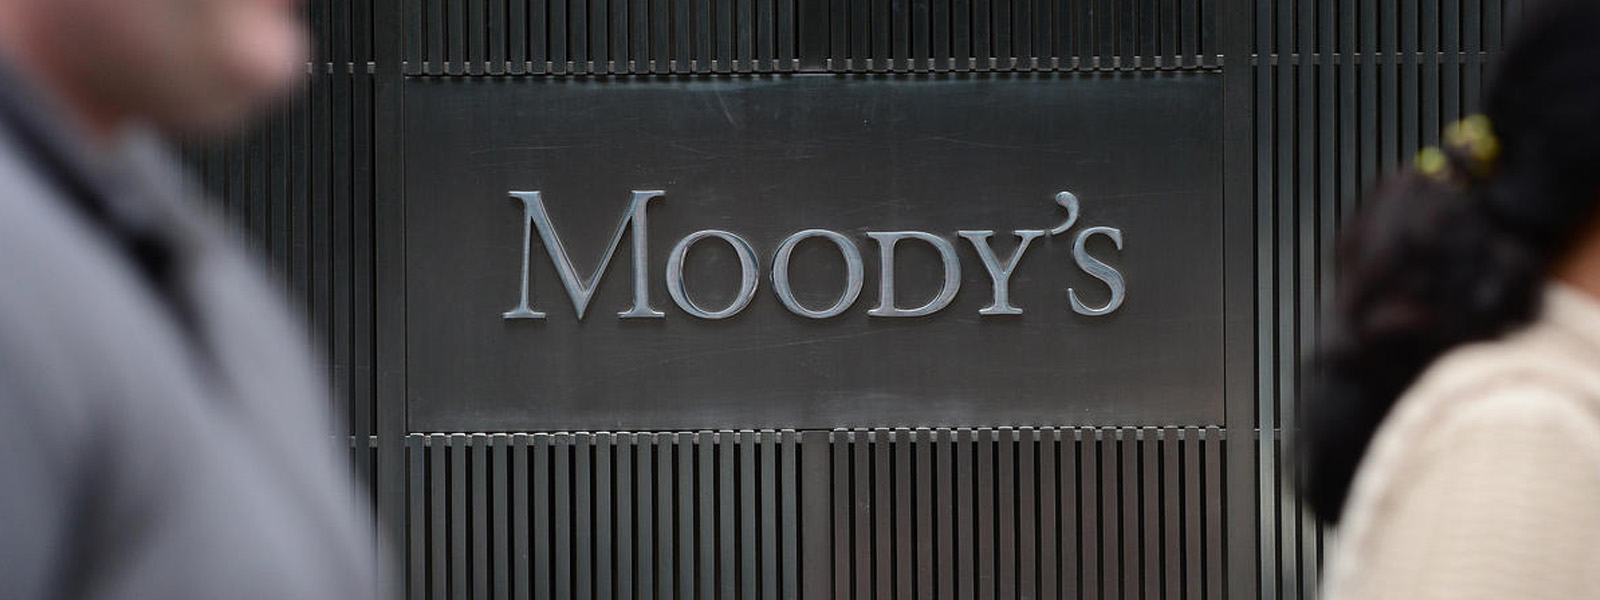 Moody’s downgrades Sri Lanka’s rating